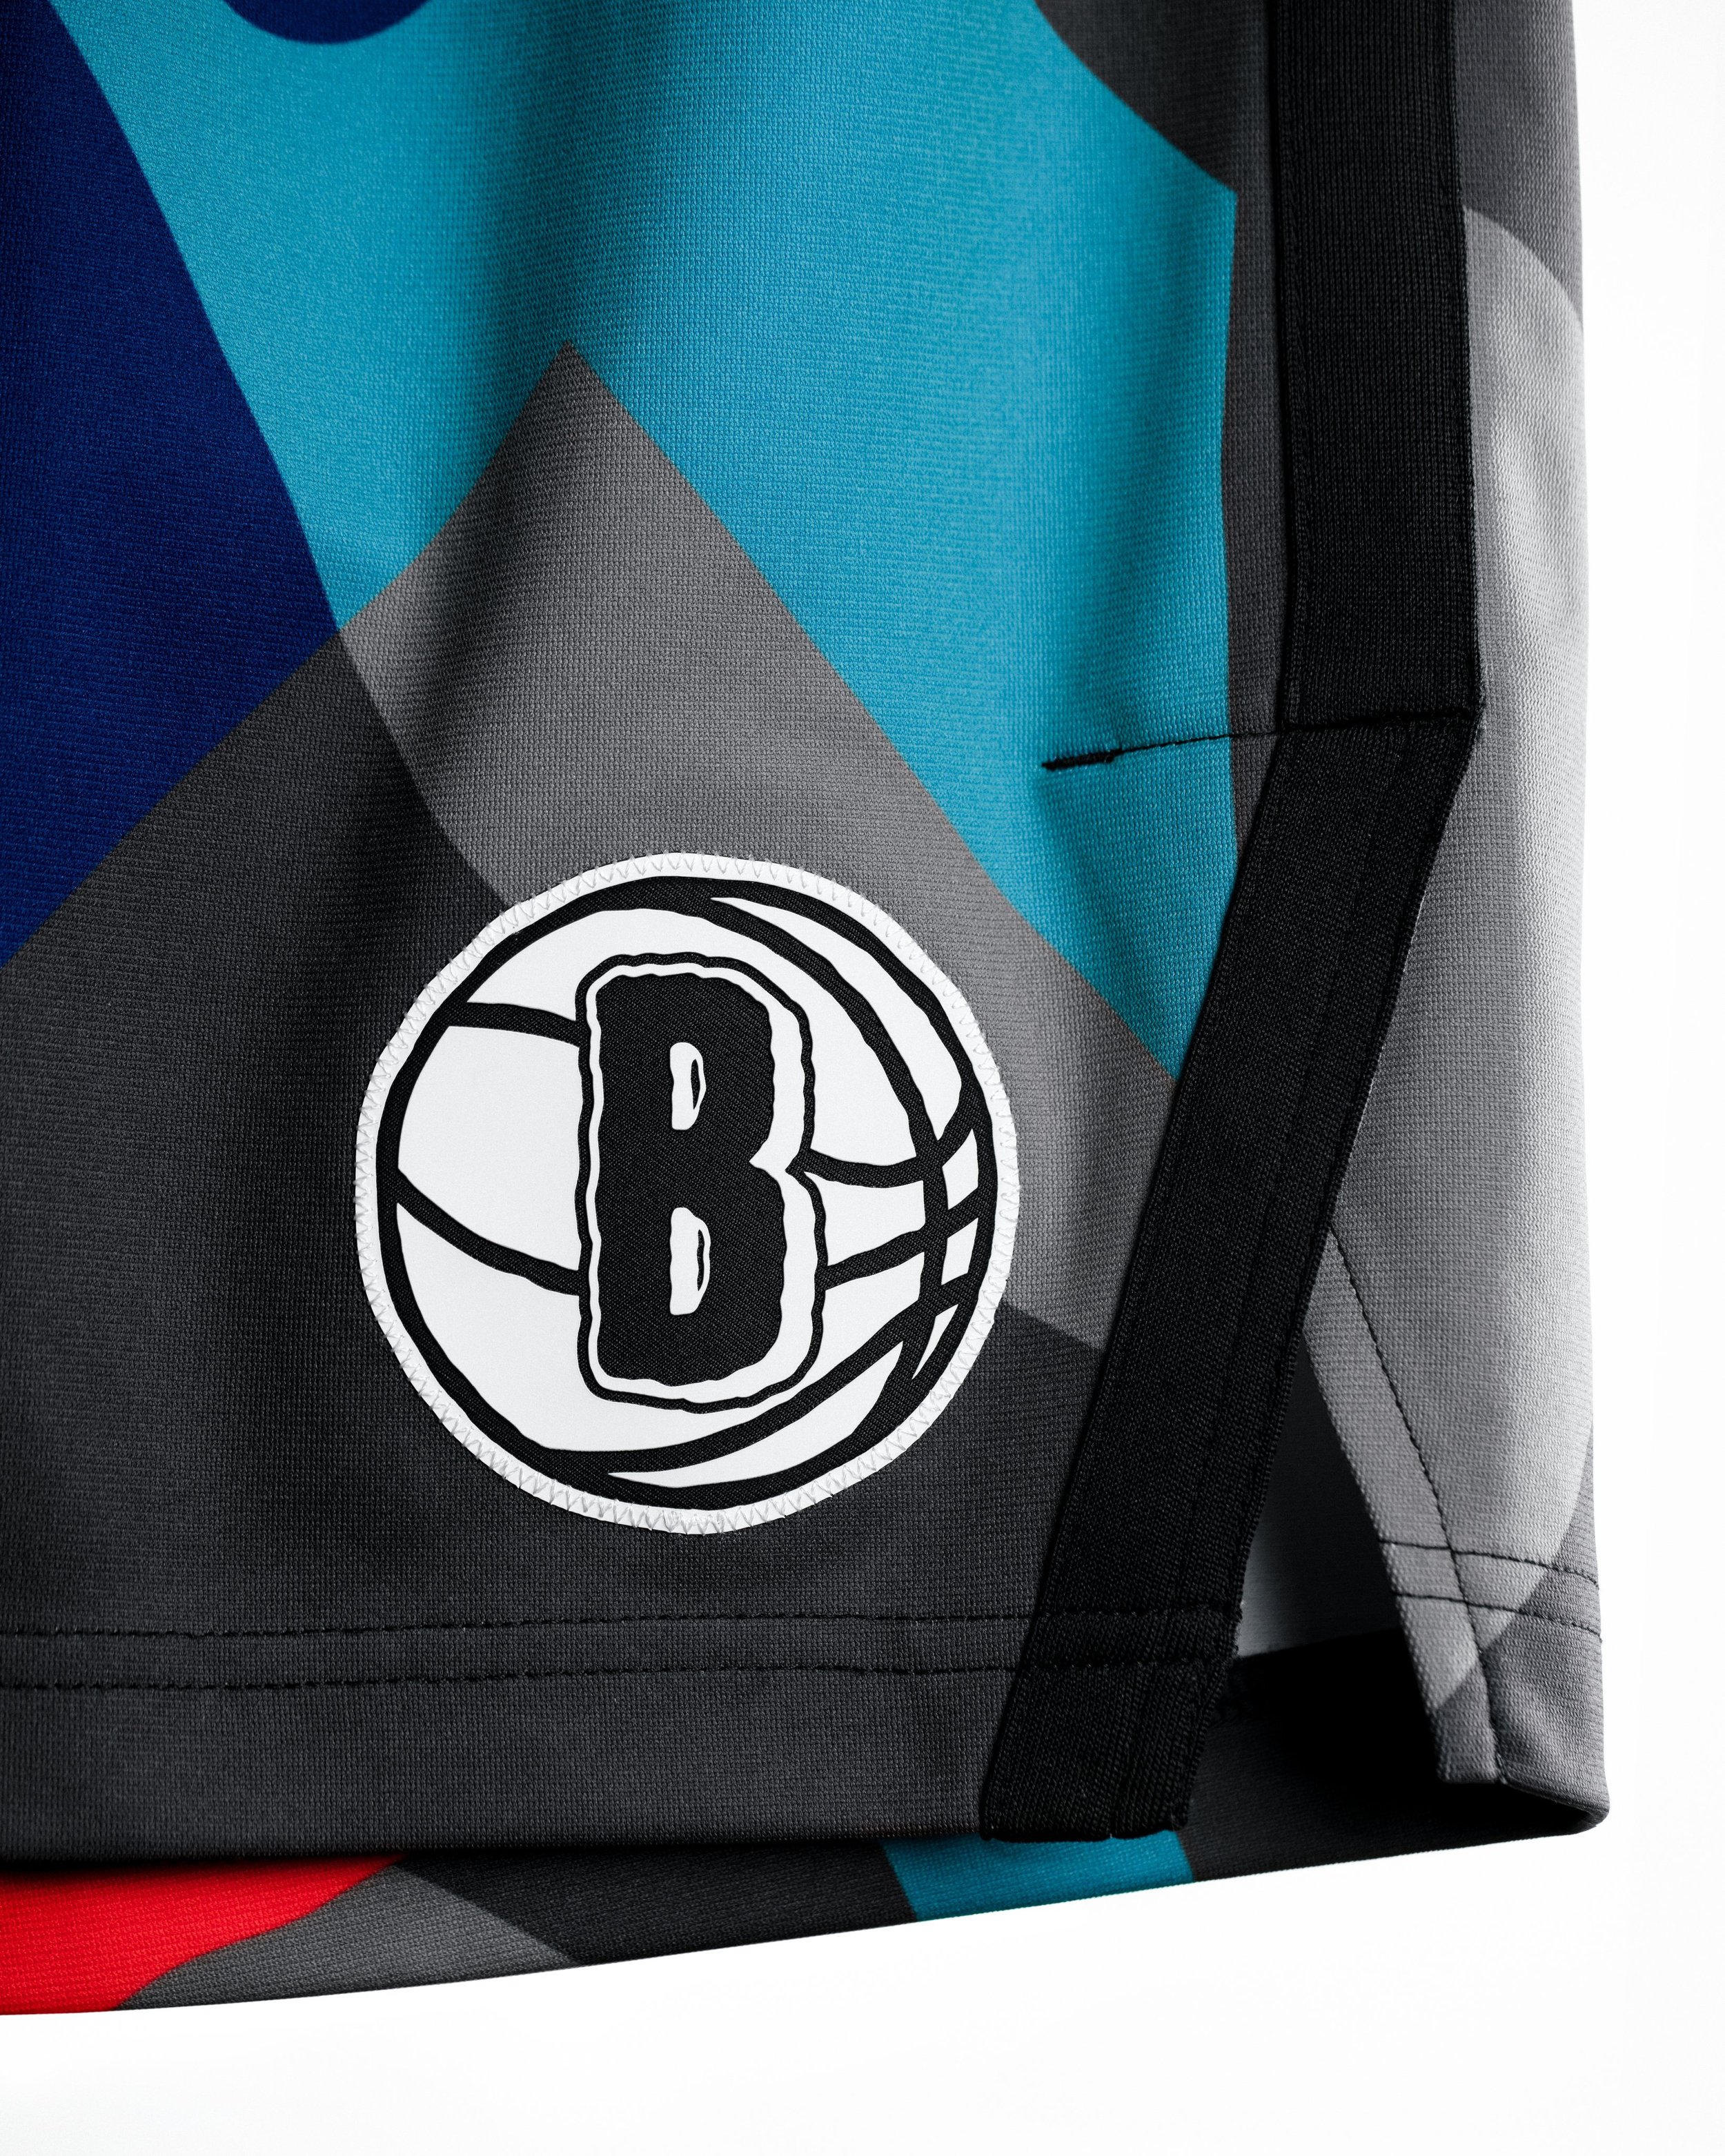 Kaws, Brooklyn Nets Team on 2023-24 City Edition Uniform: Details – WWD